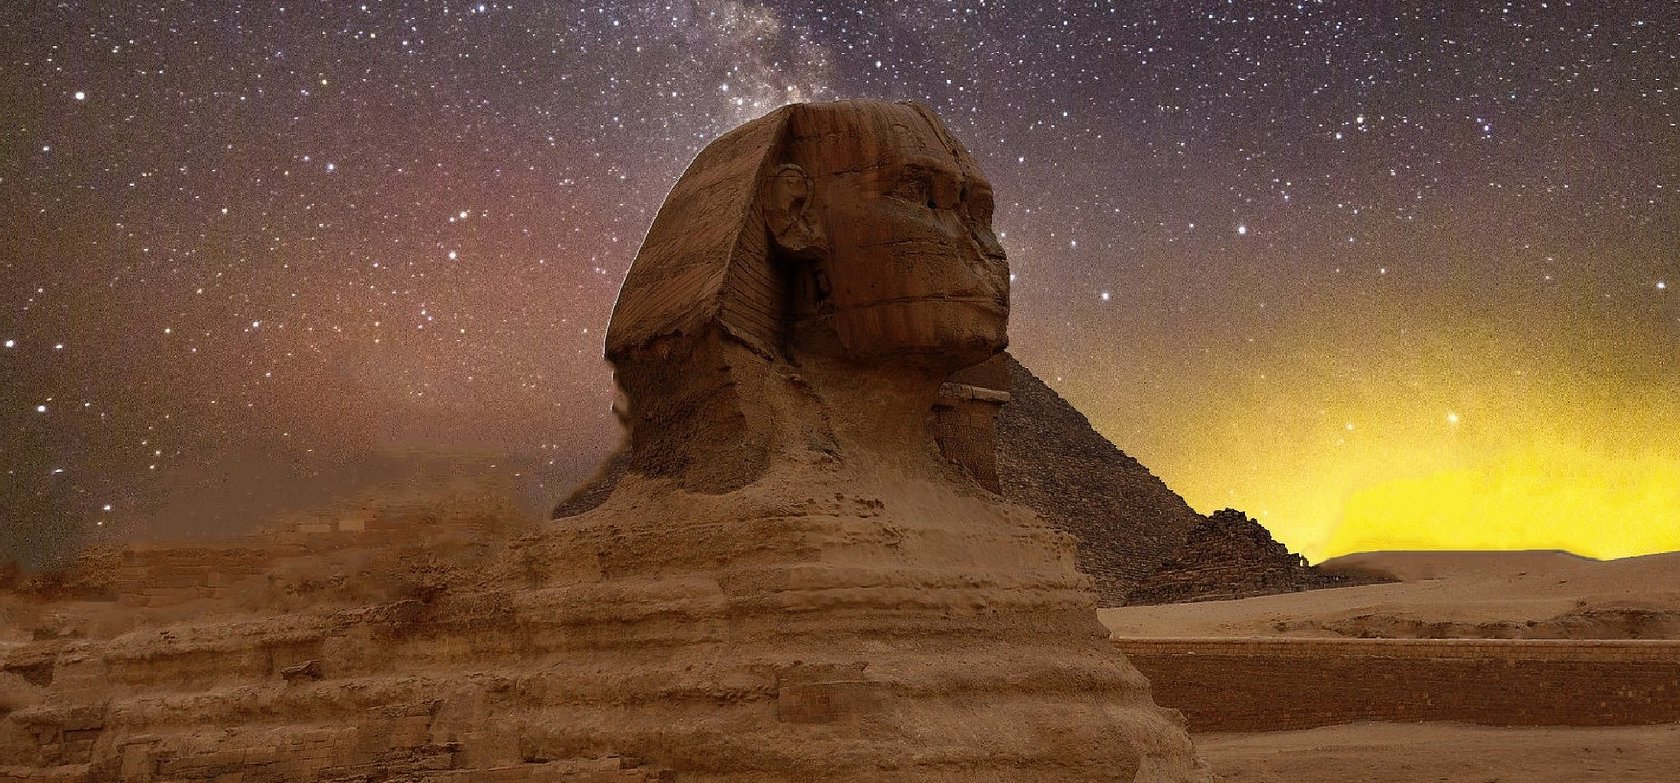 Döbbenetes felfedezés: fény derült az egyiptomi szfinx legizgalmasabb rejtélyére